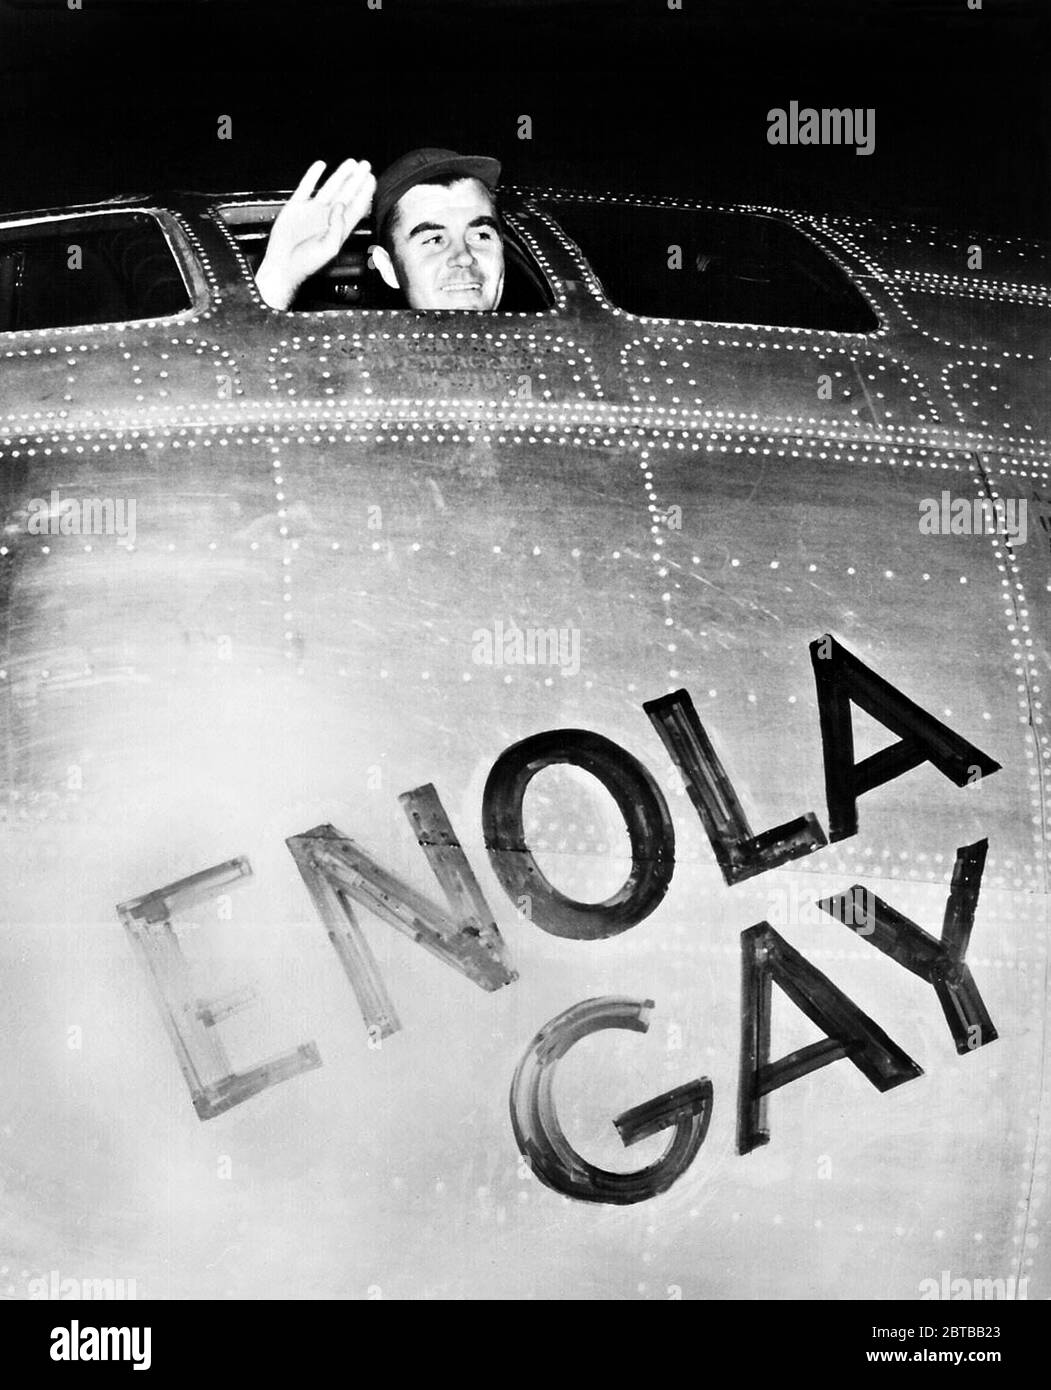 1945 , 6 agosto , Tinian , Isole Marianne Settentrionali, British Commonwelth : il colonnello americano PAUL Warfield TIBBETS Jr. ( 1915 - 2007 ), pilota di Boing B-29 ENOLA GAY , l'aereo che ha fatto cadere la BOMBA ATOMICA su HIROSHIMA (Giappone ). In questa foto salutate subito prima del decollo di Hiroshima . Foto del corpo ufficiale di segnale degli Stati Uniti . - ATTACCO ATOMICO NUCLEARE - ATTACCO NUCLEARE - SECONDA GUERRA MONDIALE - seconda guerra mondiale - SECONDA guerra mondiale - SECONDA guerra MONDIALE - foto storiche - FOTO STORICHE - FOTO STORICHE - Stati Uniti d'America - bombardamento - aviazione - BOMBA ATOMICA - bomba - attacco aereo - USA - GIAPPONE - GUERRA DEL PACIFICO - Foto Stock